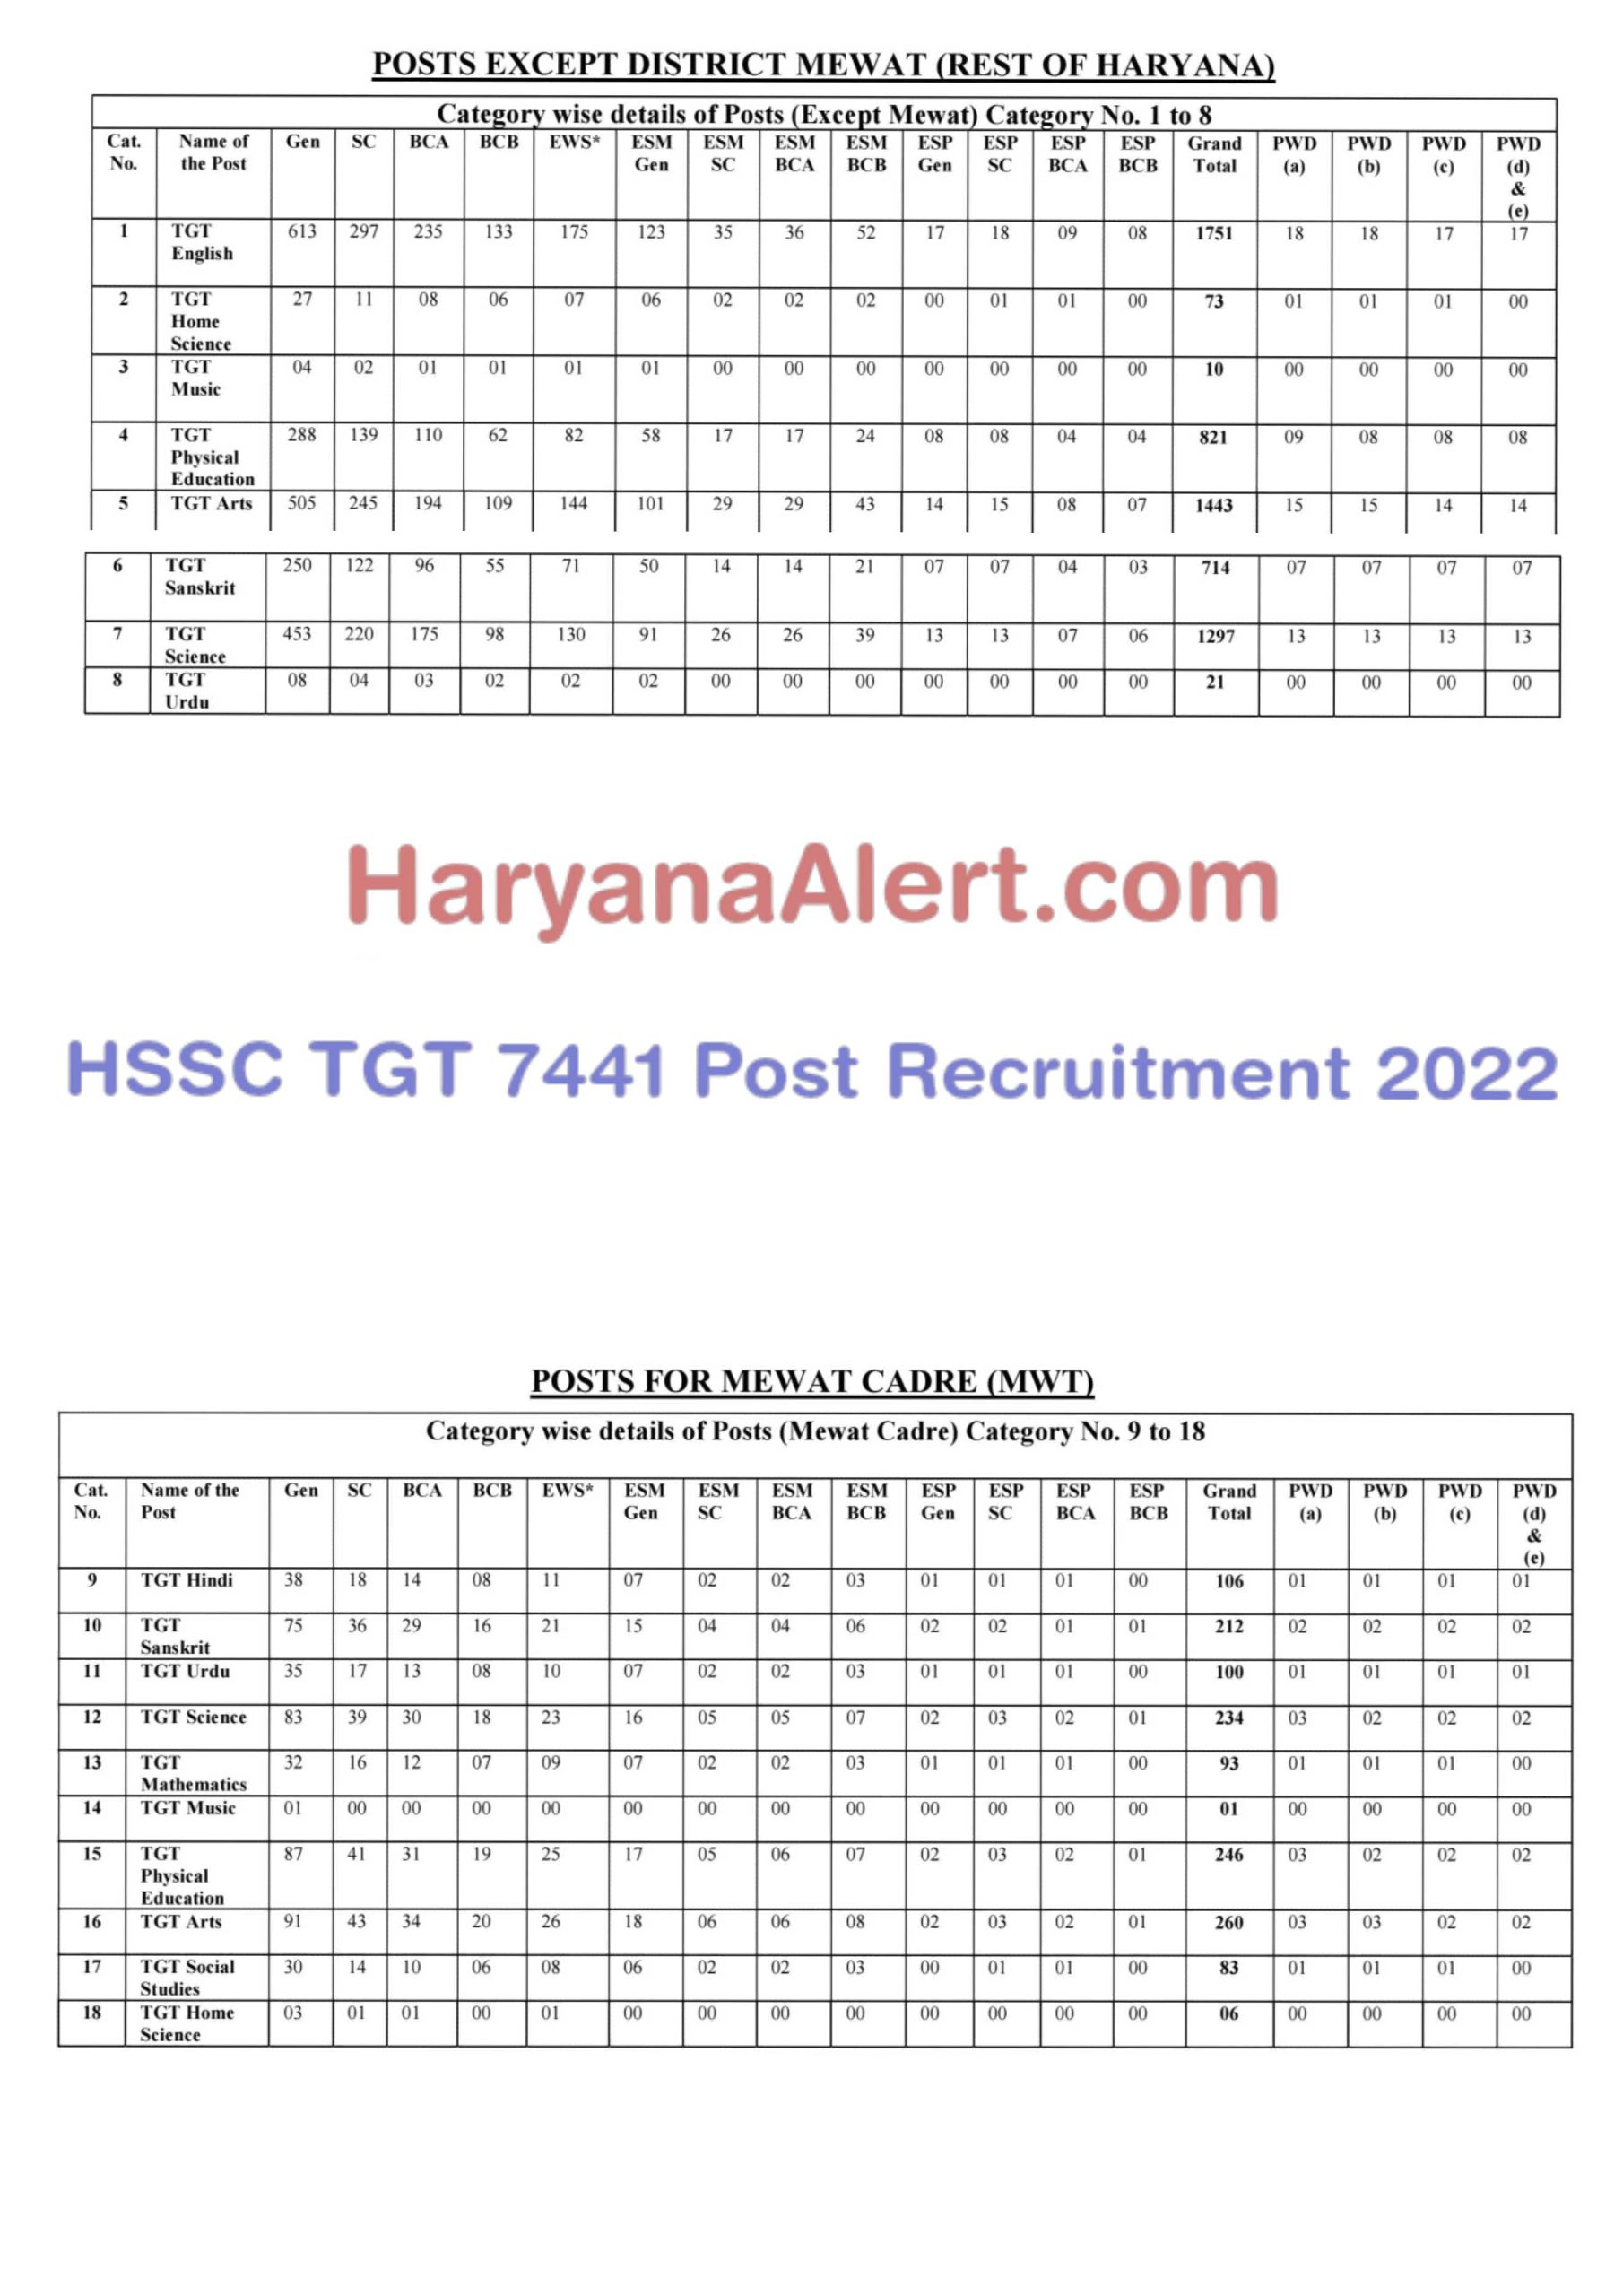 HSSC TGT 7441 Post Recruitment 2022